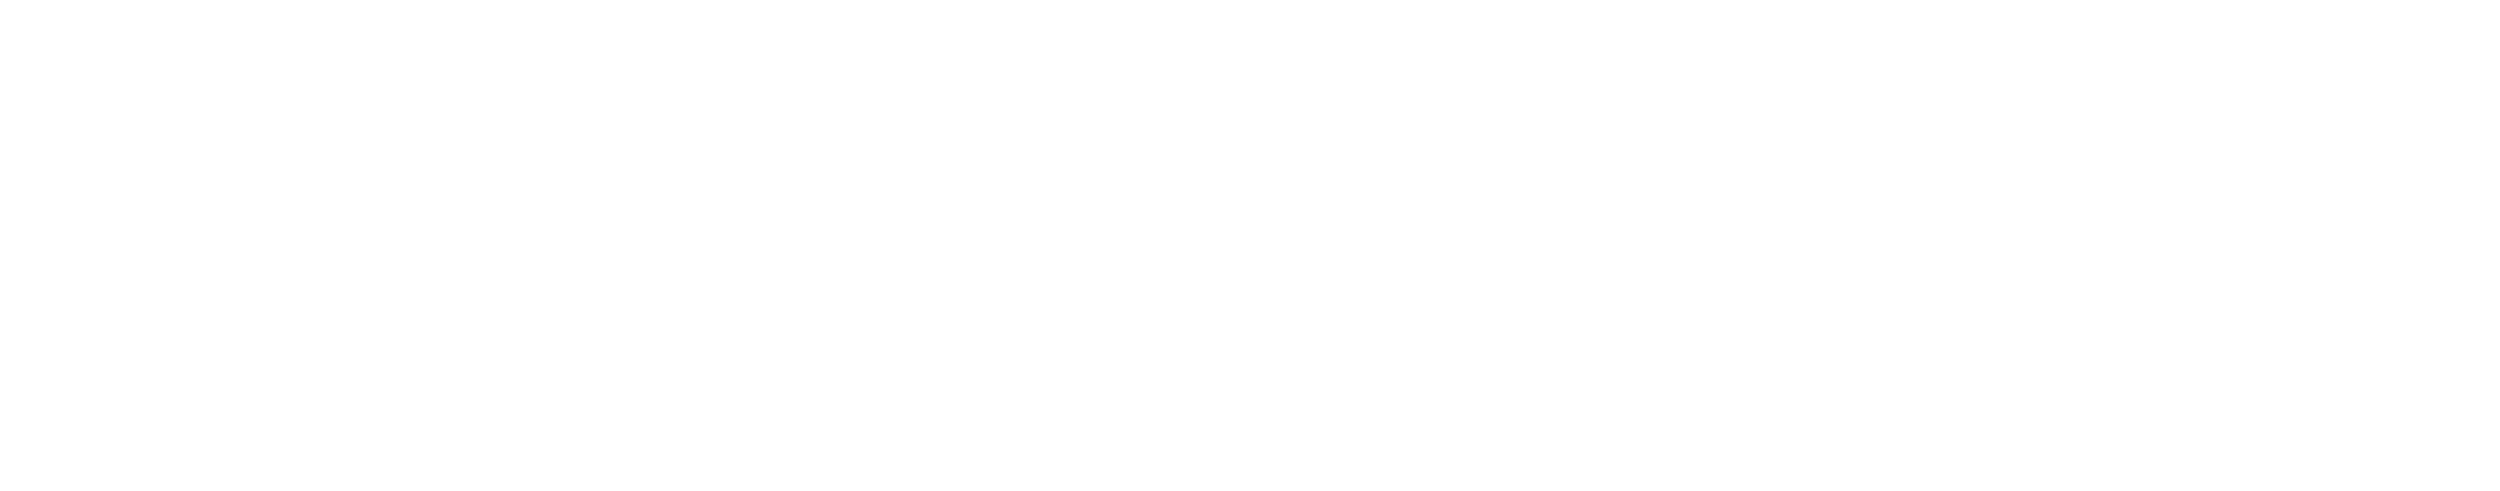 stackoverflow logo white